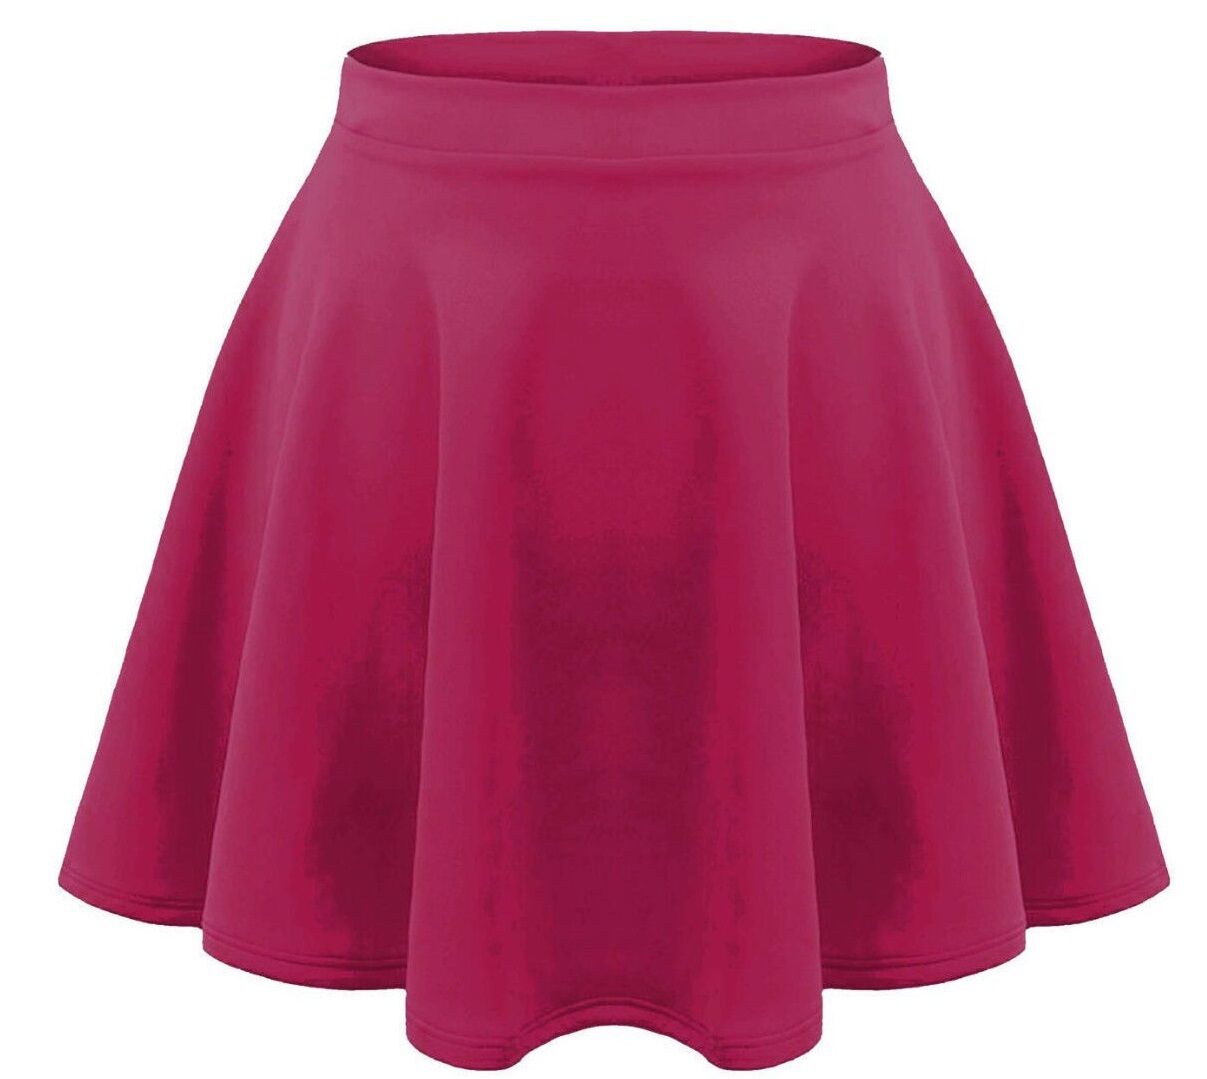 Girls Plain Fuchsia Pink Skater Skirt.